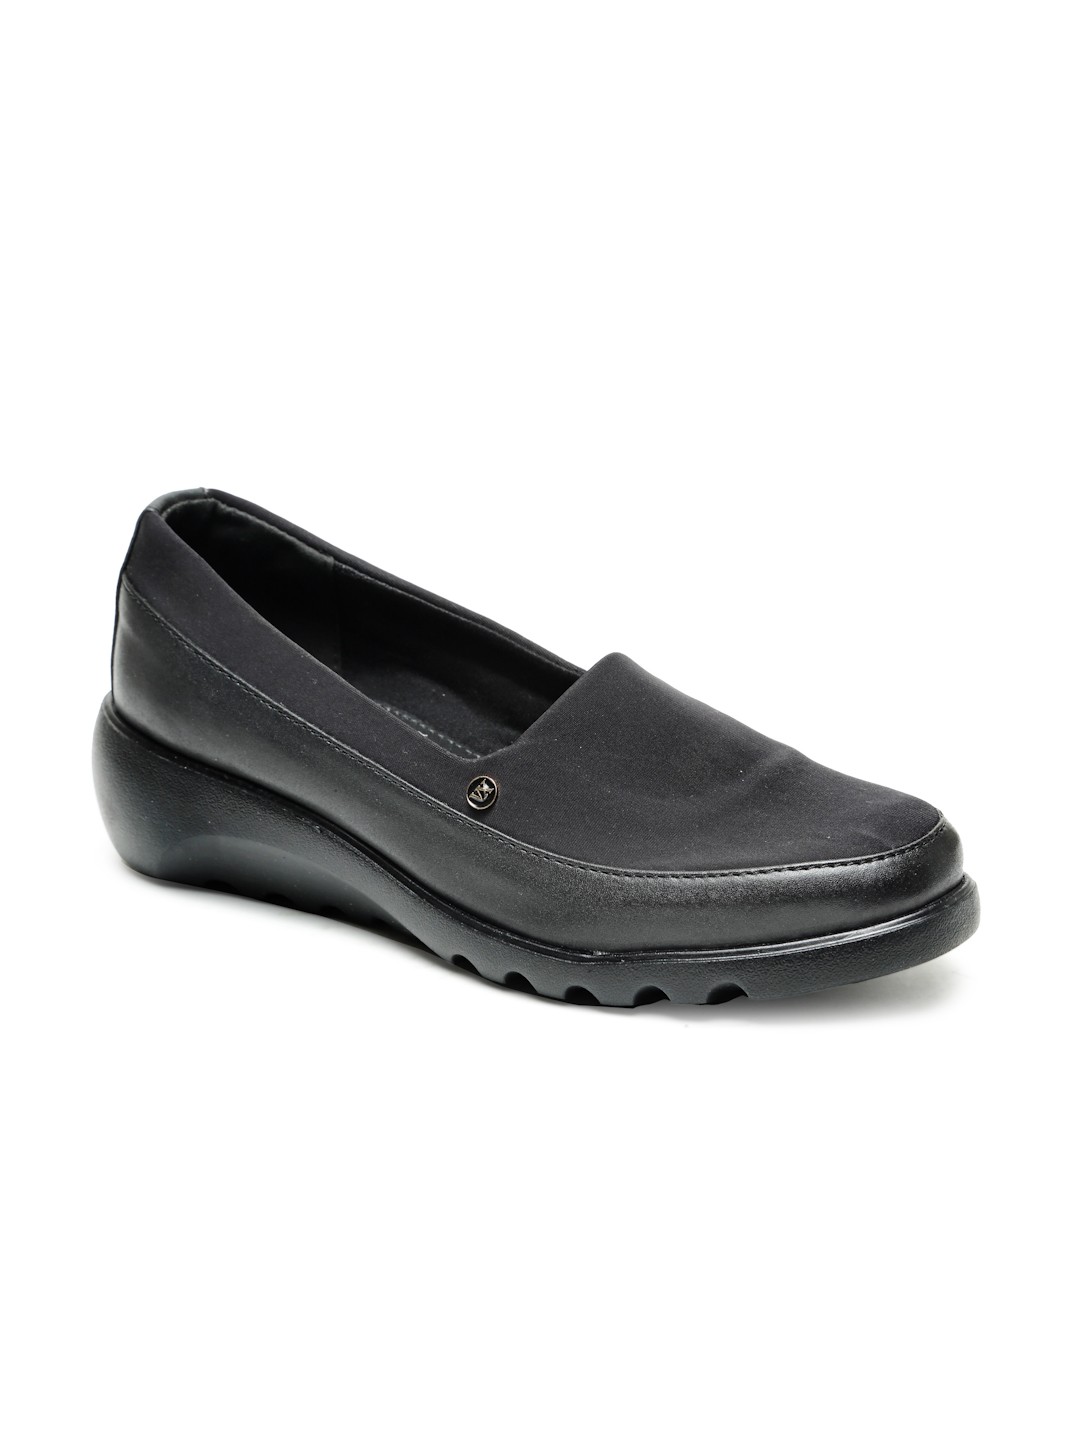 Buy Von Wellx Germany Comfort Women's Black Casual Shoes Elsa Online in Surat